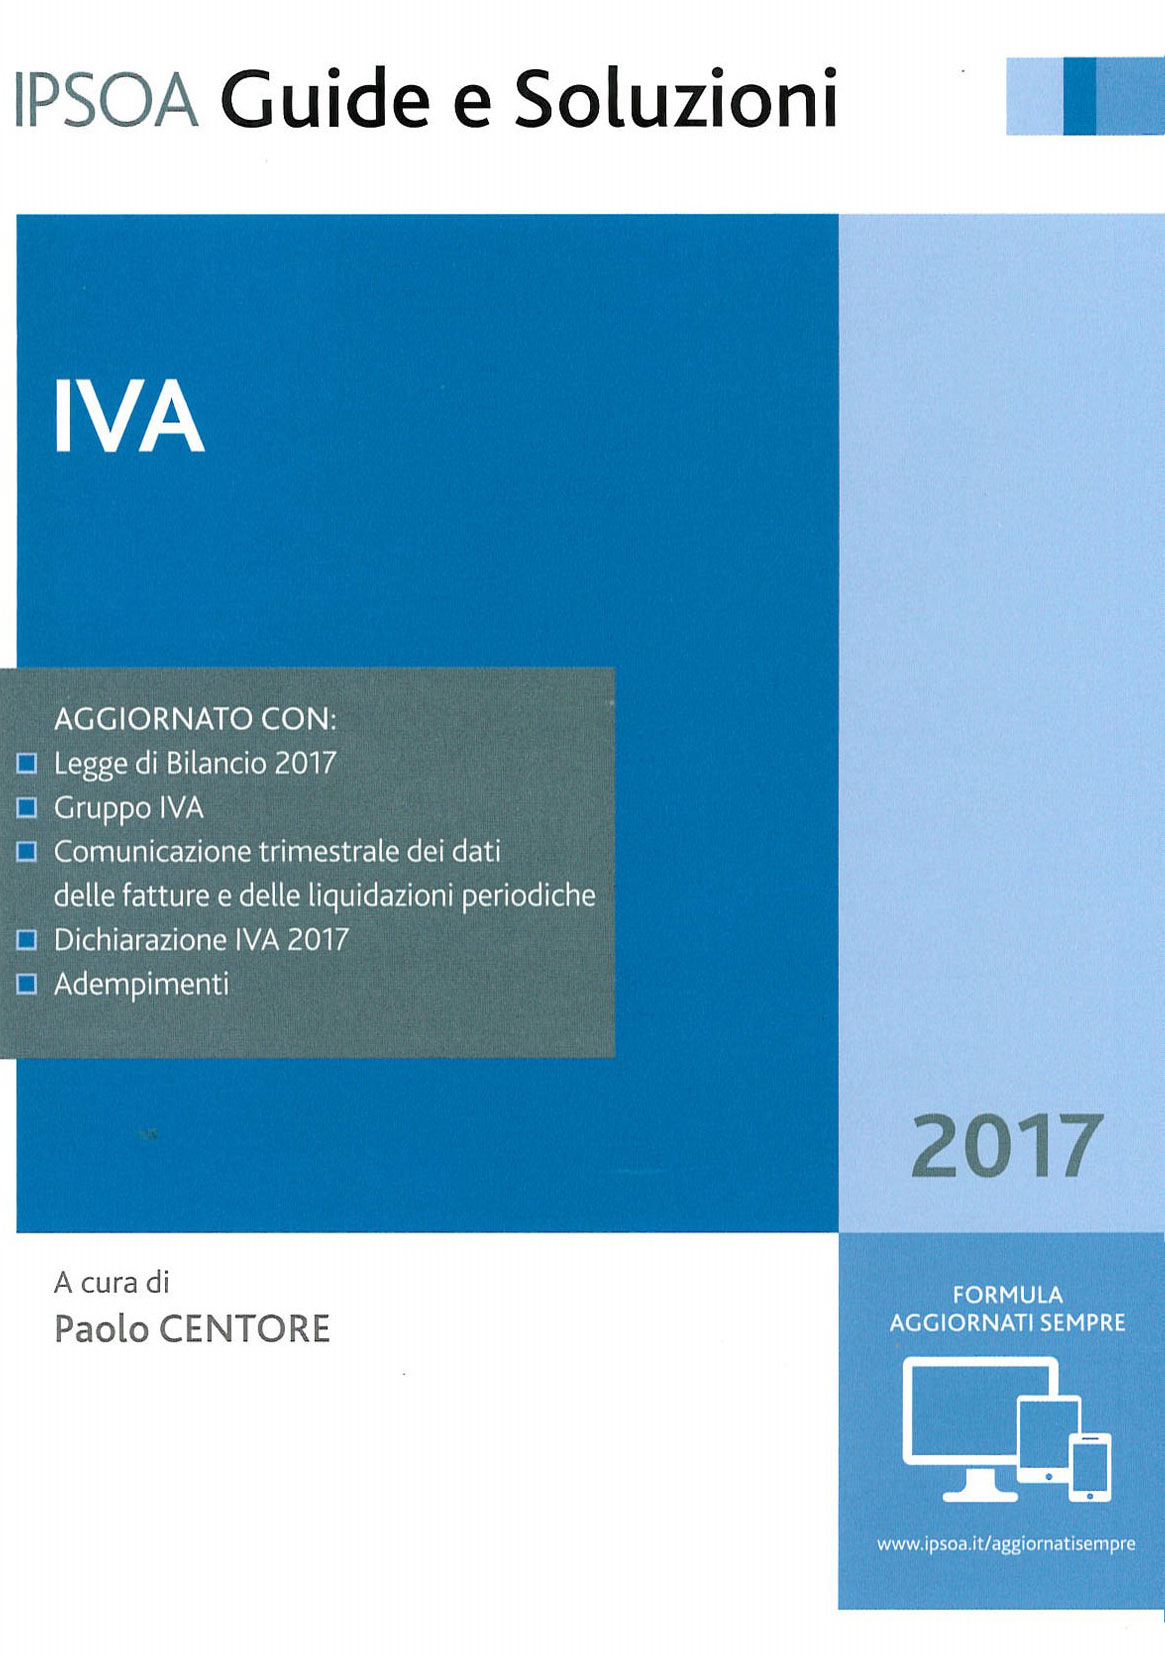 IVA 2017